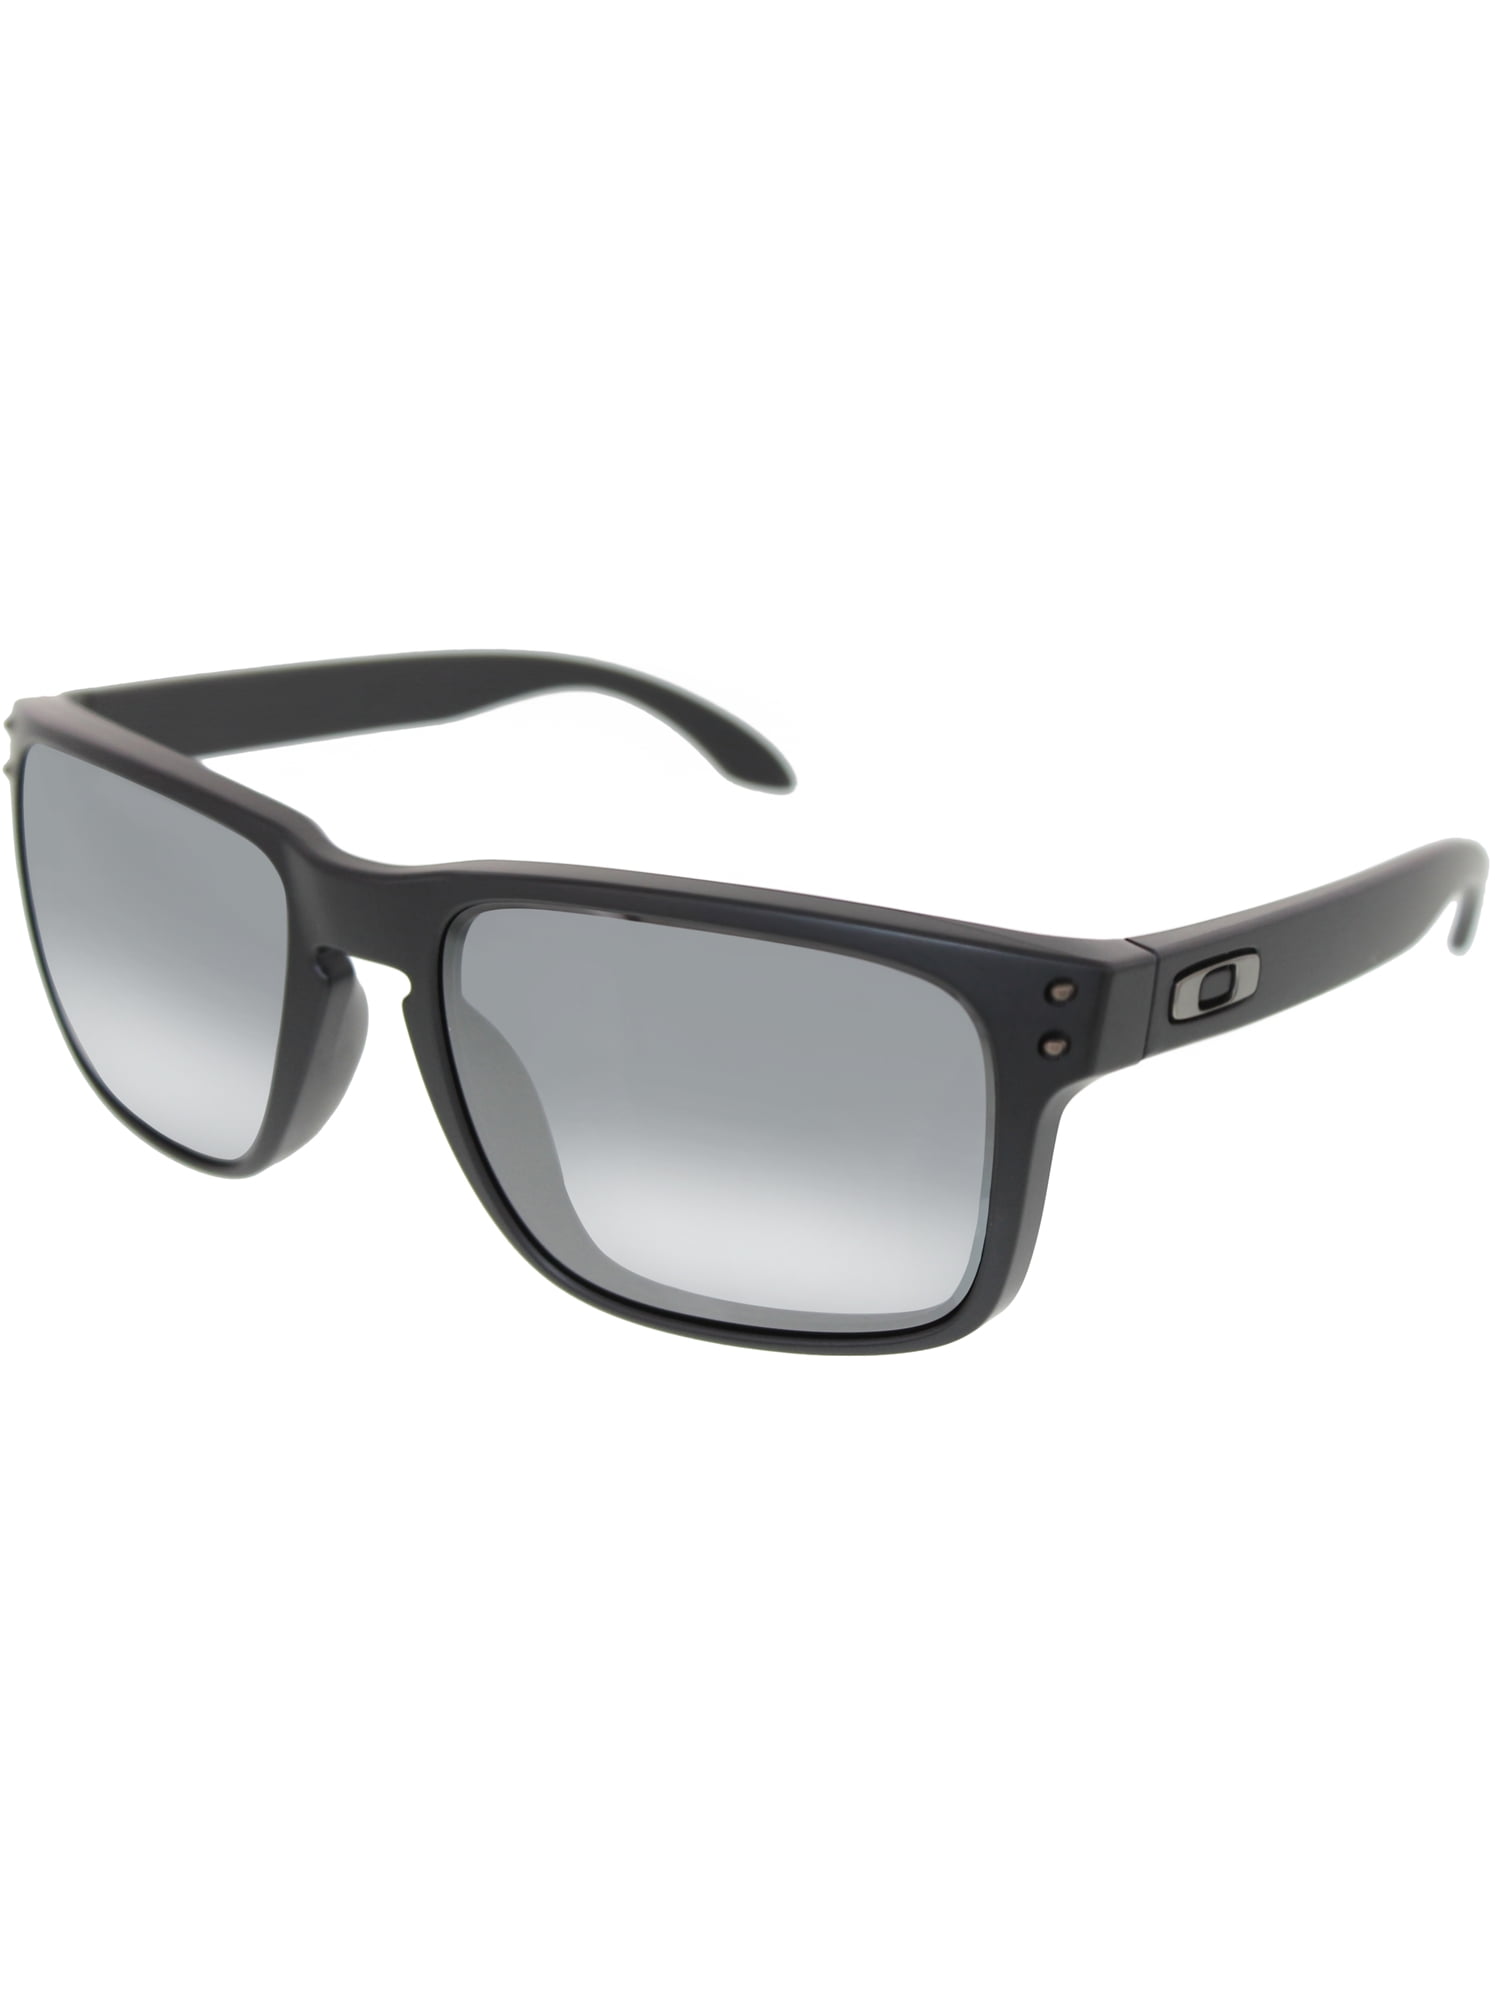 Oakley - Oakley Holbrook Sunglasses, OO9102-63 - Walmart.com